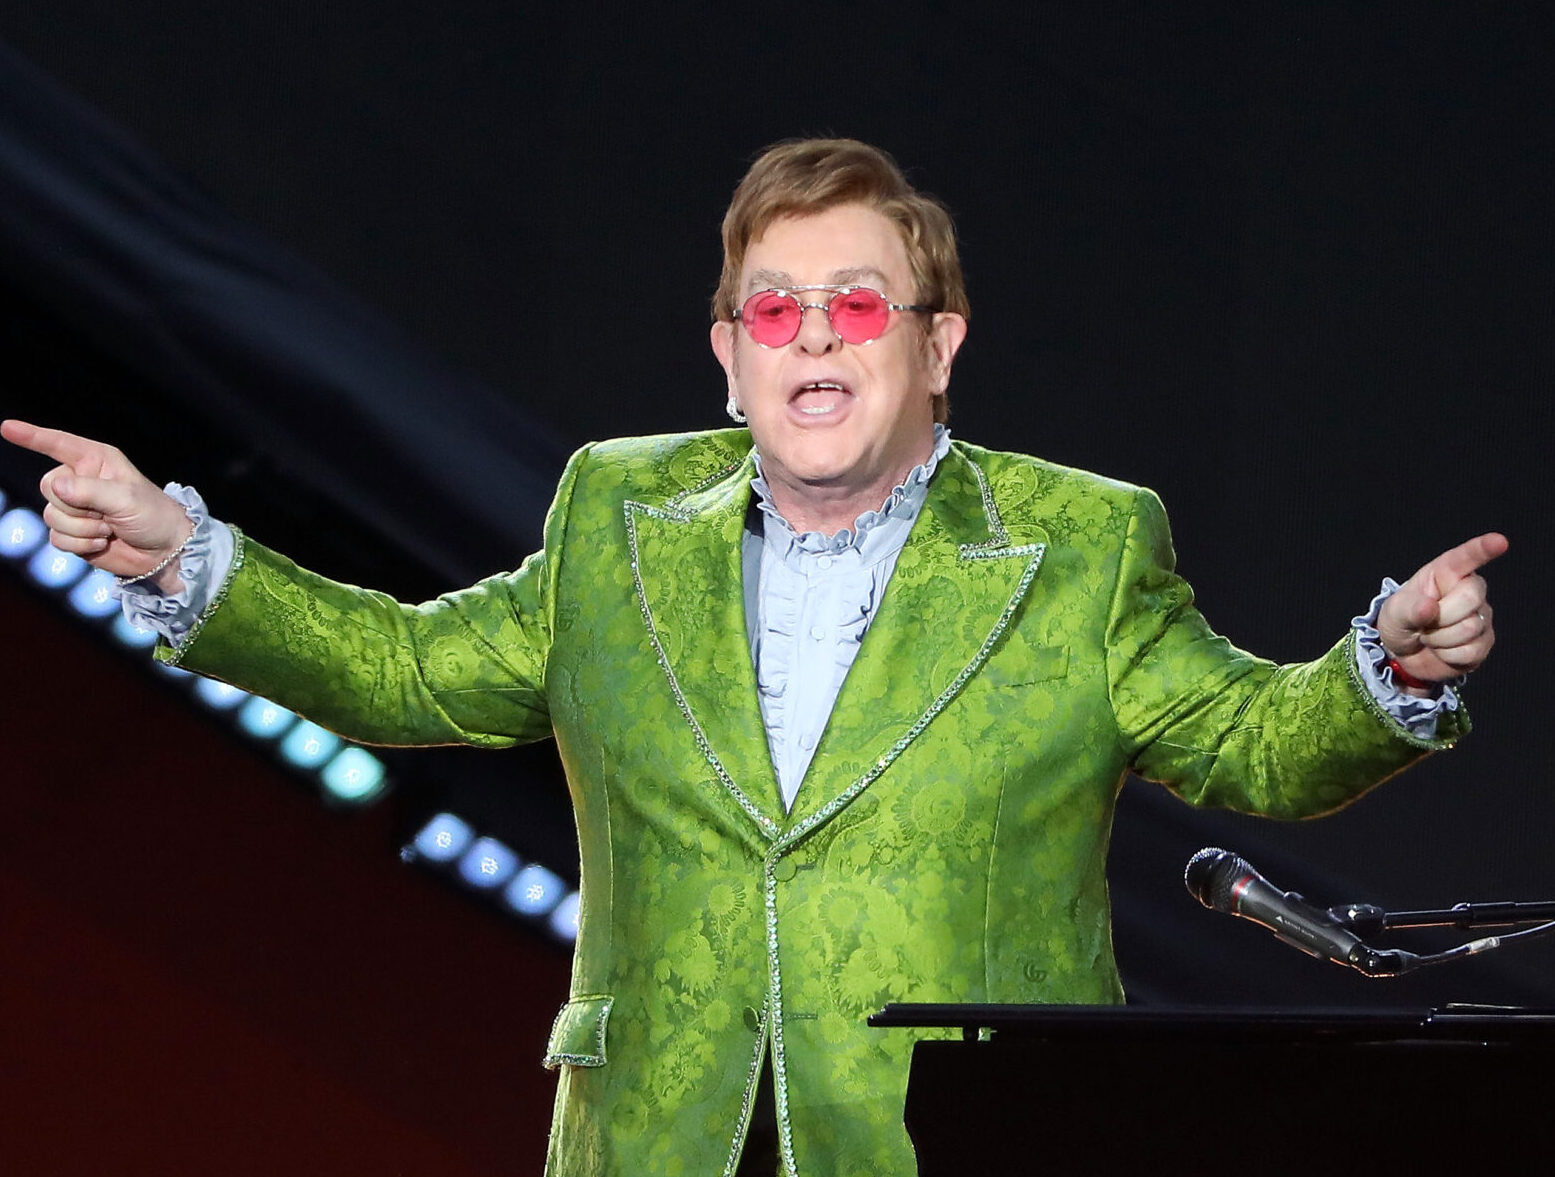 Elton John Farewell Yellow Brick Road Tour NLR stop rescheduled to